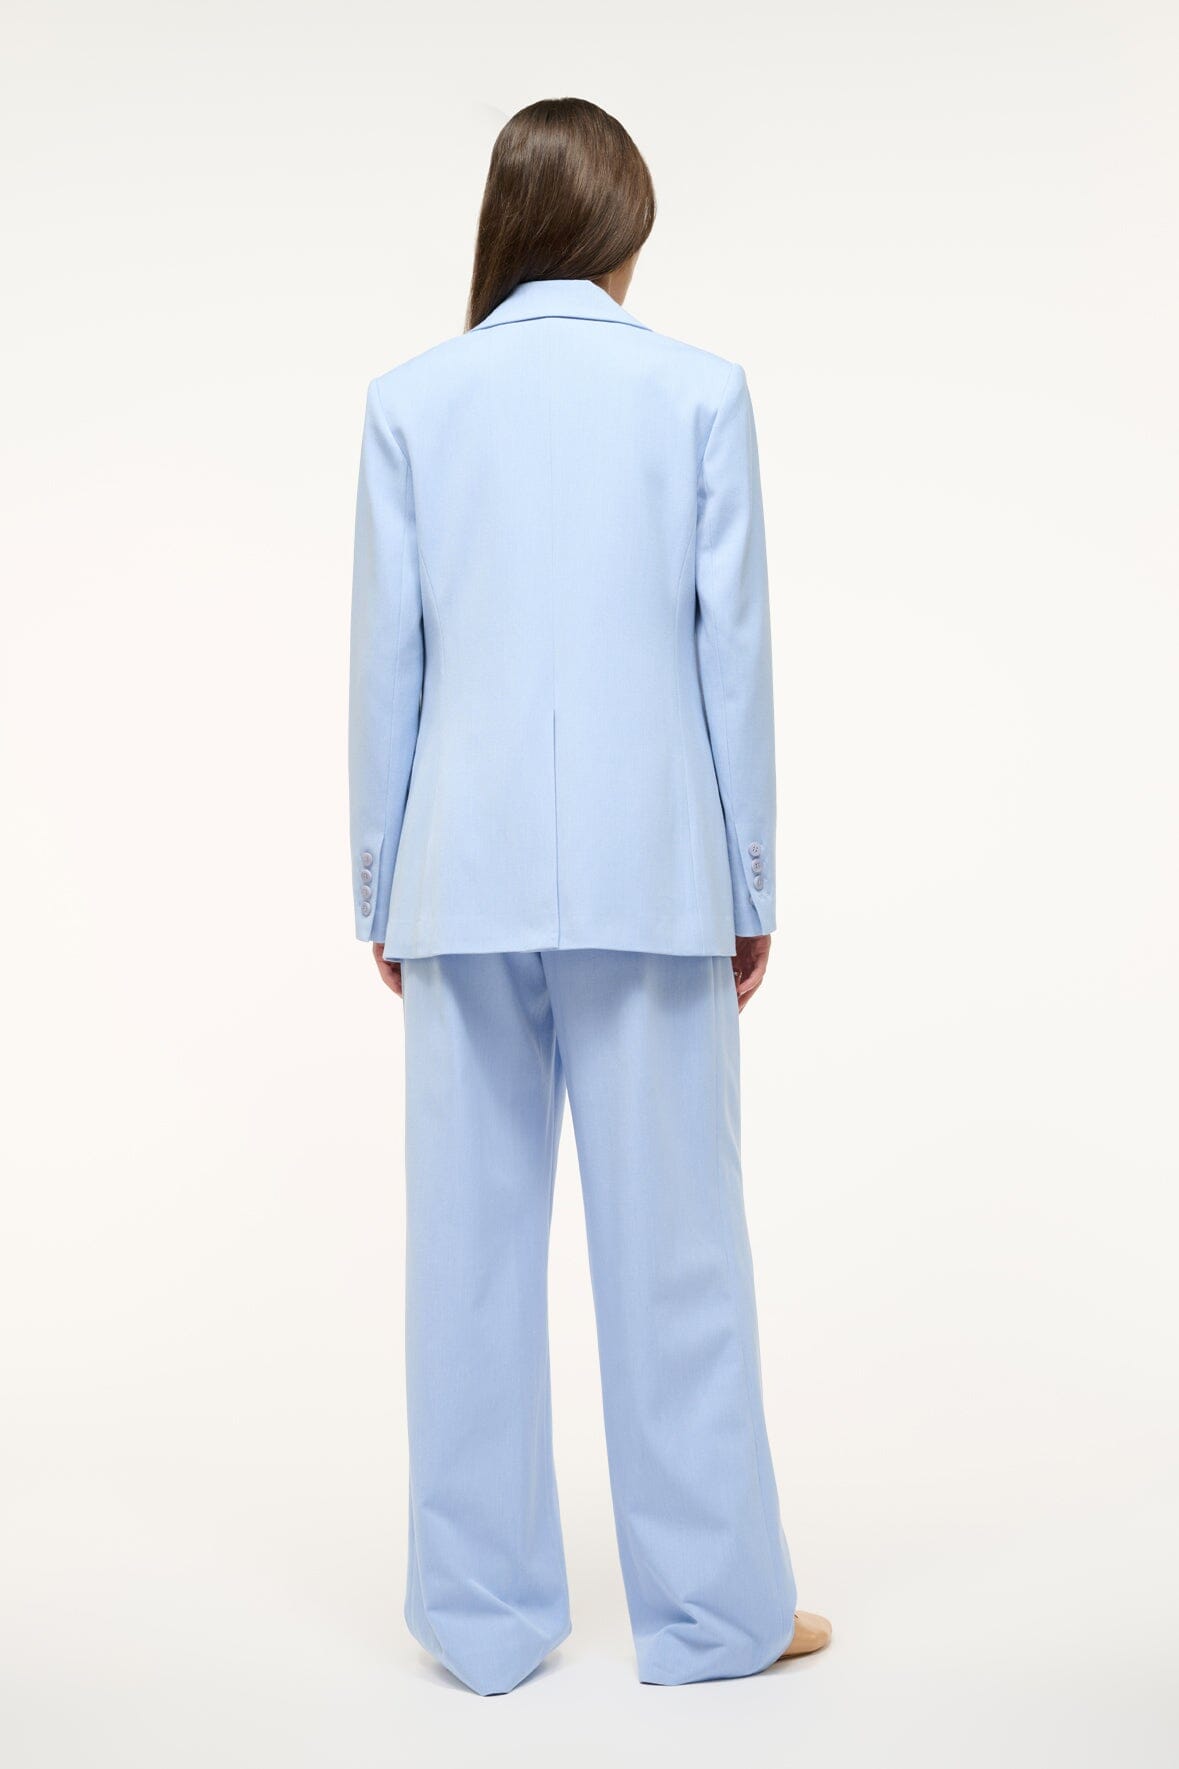 Periwinkle Womens Pant Suit Career Long Sleeve Jacket/Pants Sz 8